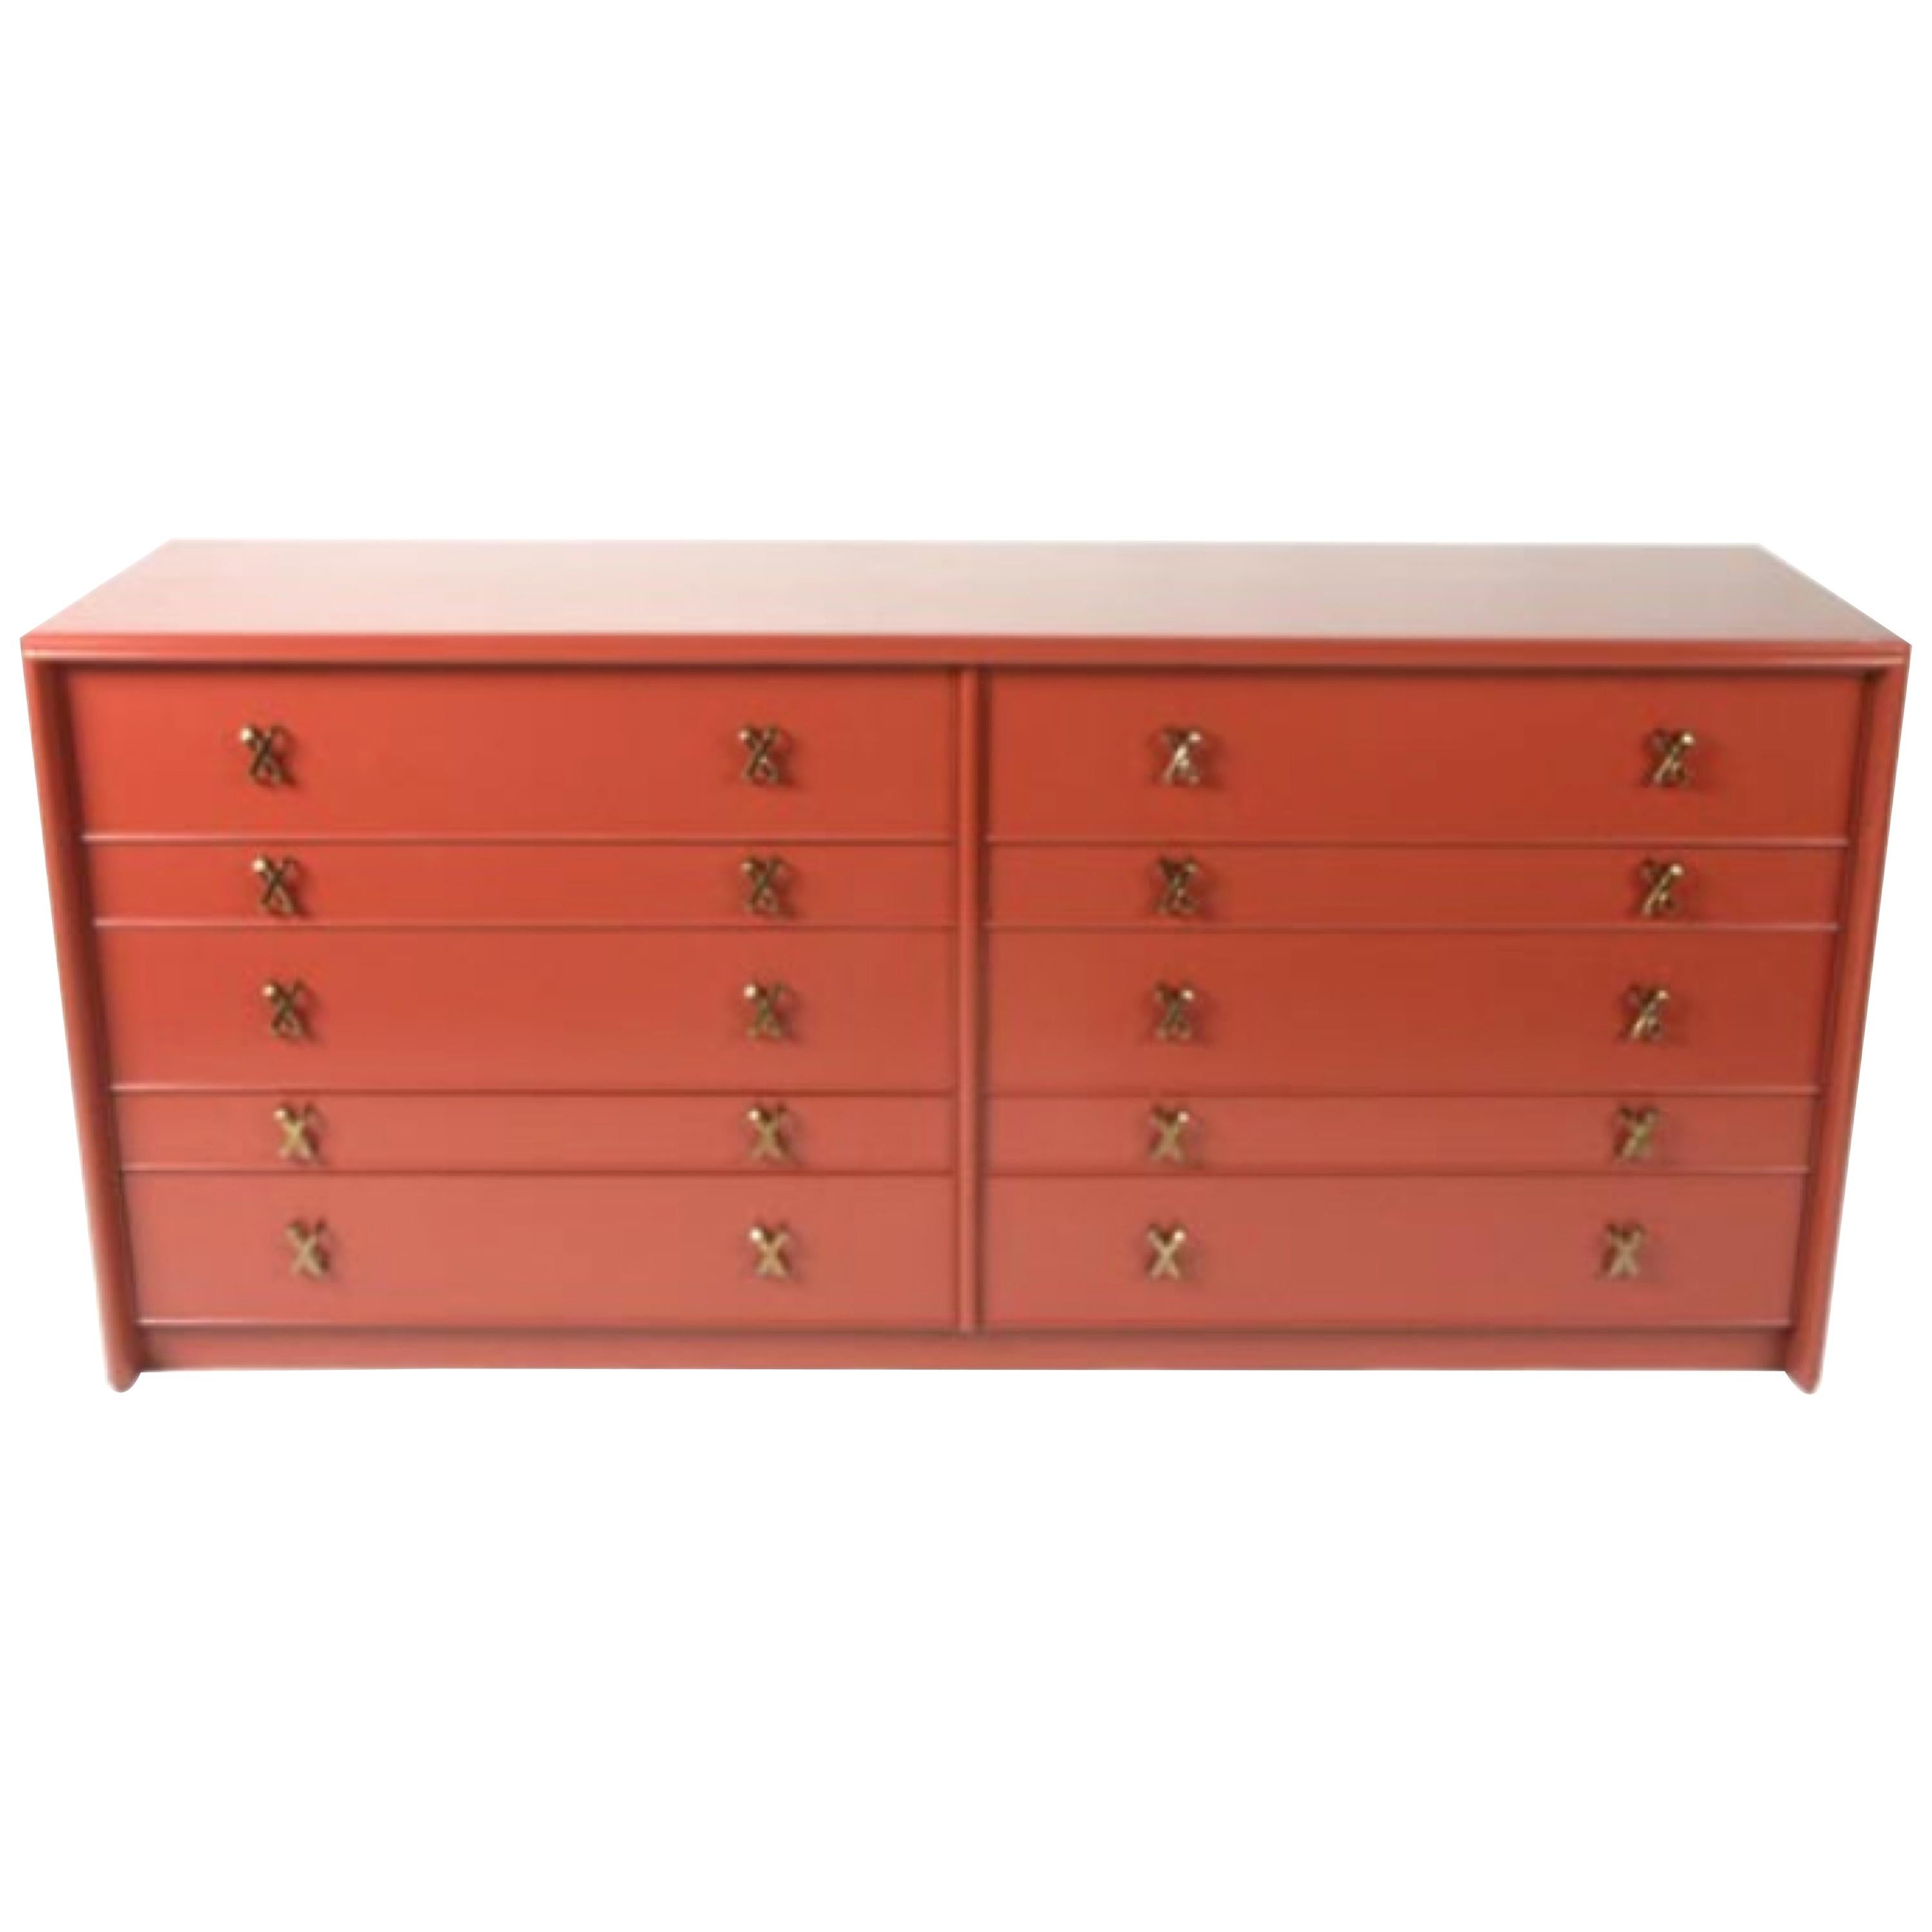 Paul Frankl for Johnson Furniture Ten-Drawer Double Dresser Brass X Pulls